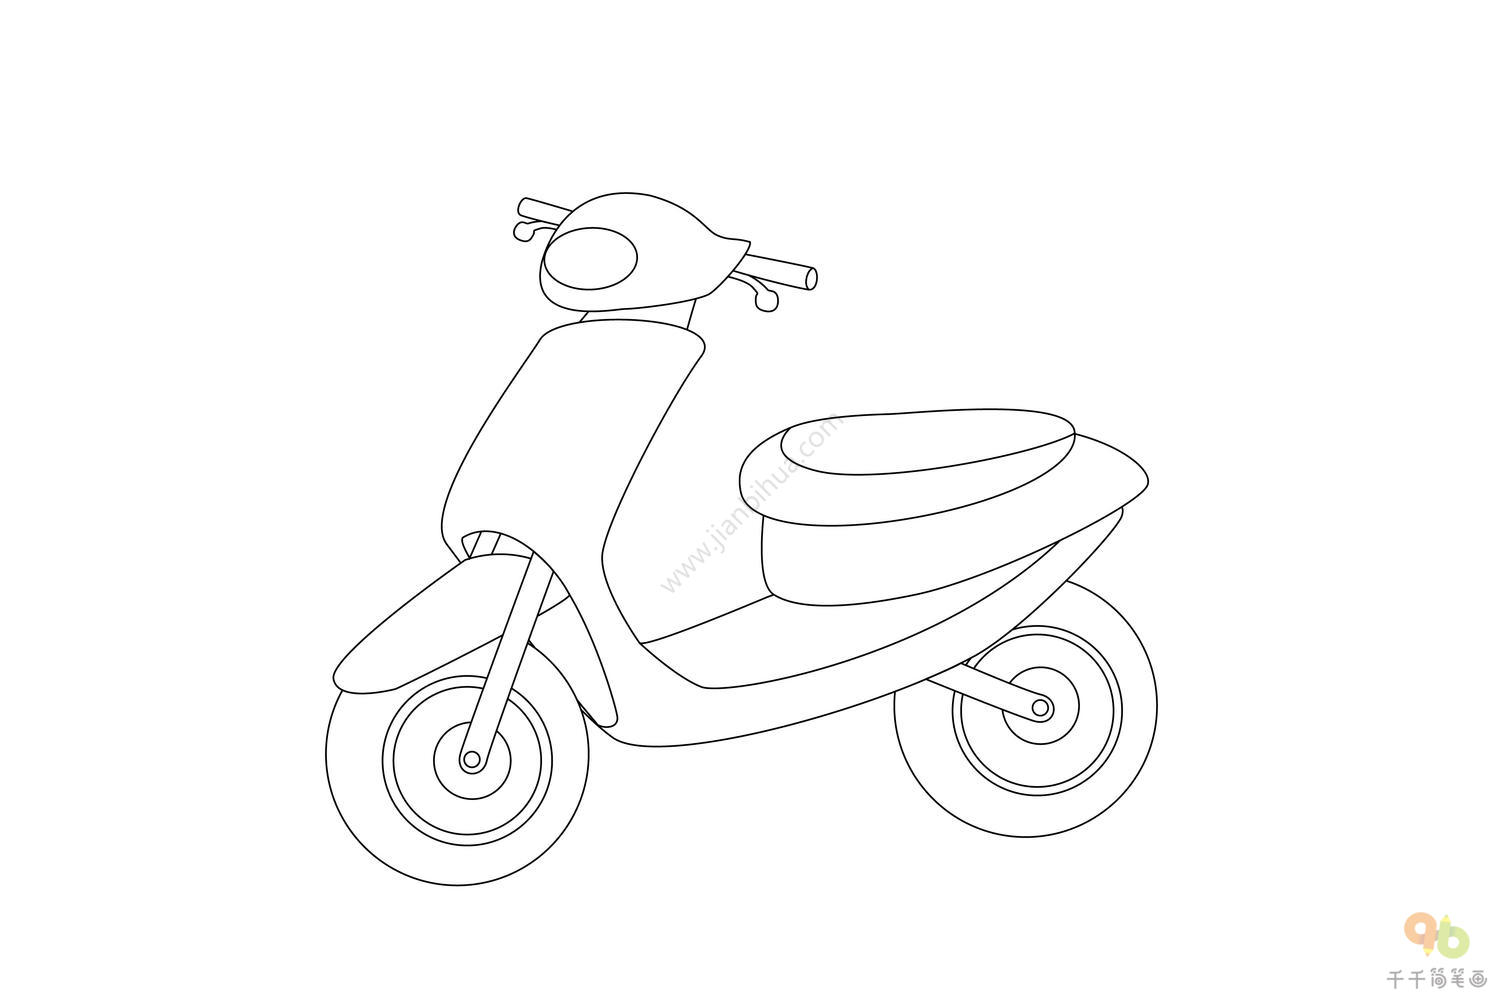 年度最简单的马克笔画摩托车技法出炉！ - 极典美育